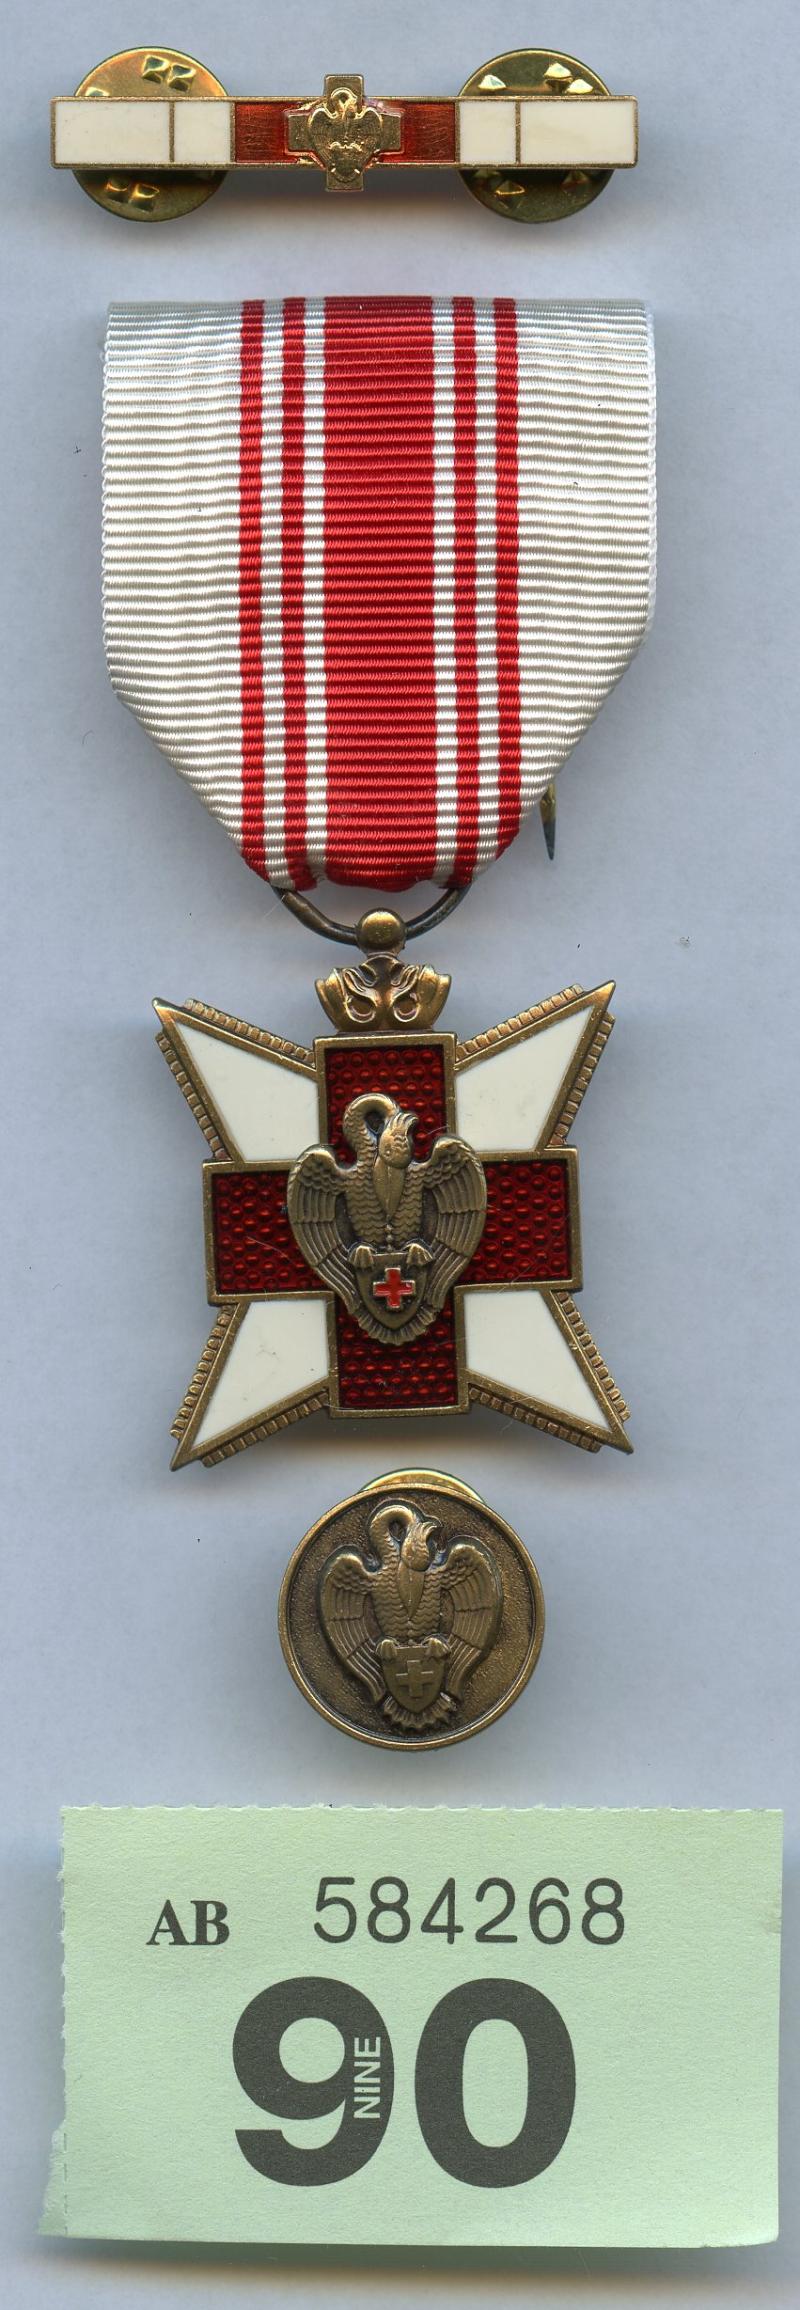 red Cross of belgium medal